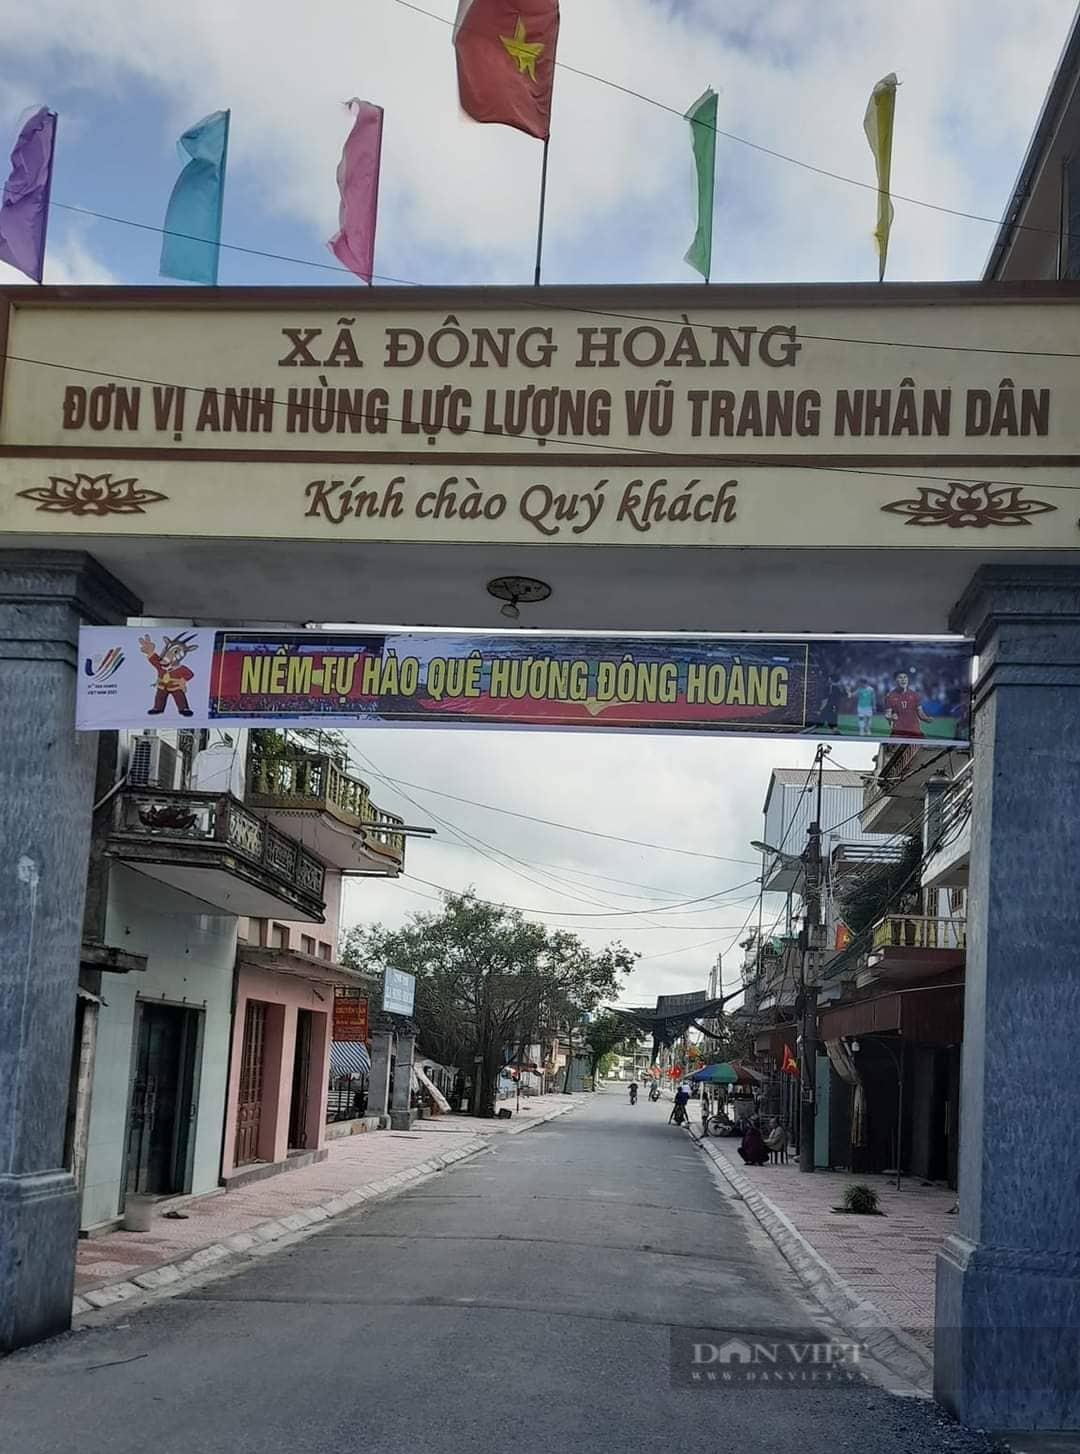 “Người hùng” U23 Việt Nam Nhâm Mạnh Dũng – niềm tự hào của người dân quê lúa Thái Bình  - Ảnh 1.